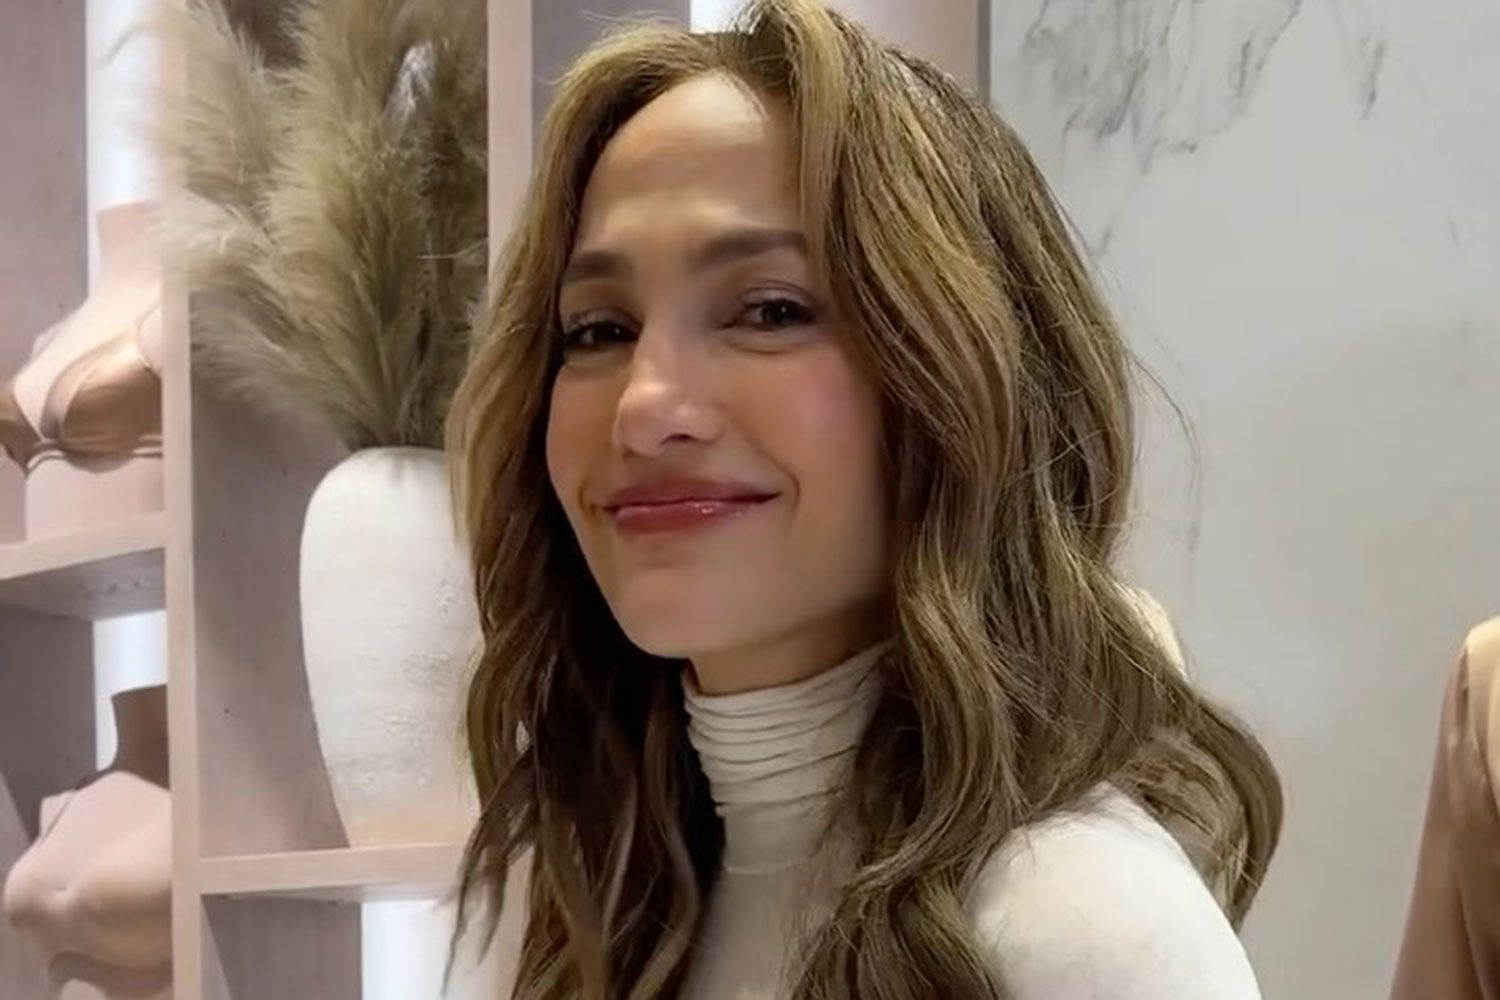 Jennifer Lopez is âStill Decidingâ on Her Met Gala Look: âI Like Options!â https://www.instagram.com/reel/C54bF_bJJZh/?igsh=MWduMHNnYnJ6cjJ1Zw%3D%3D